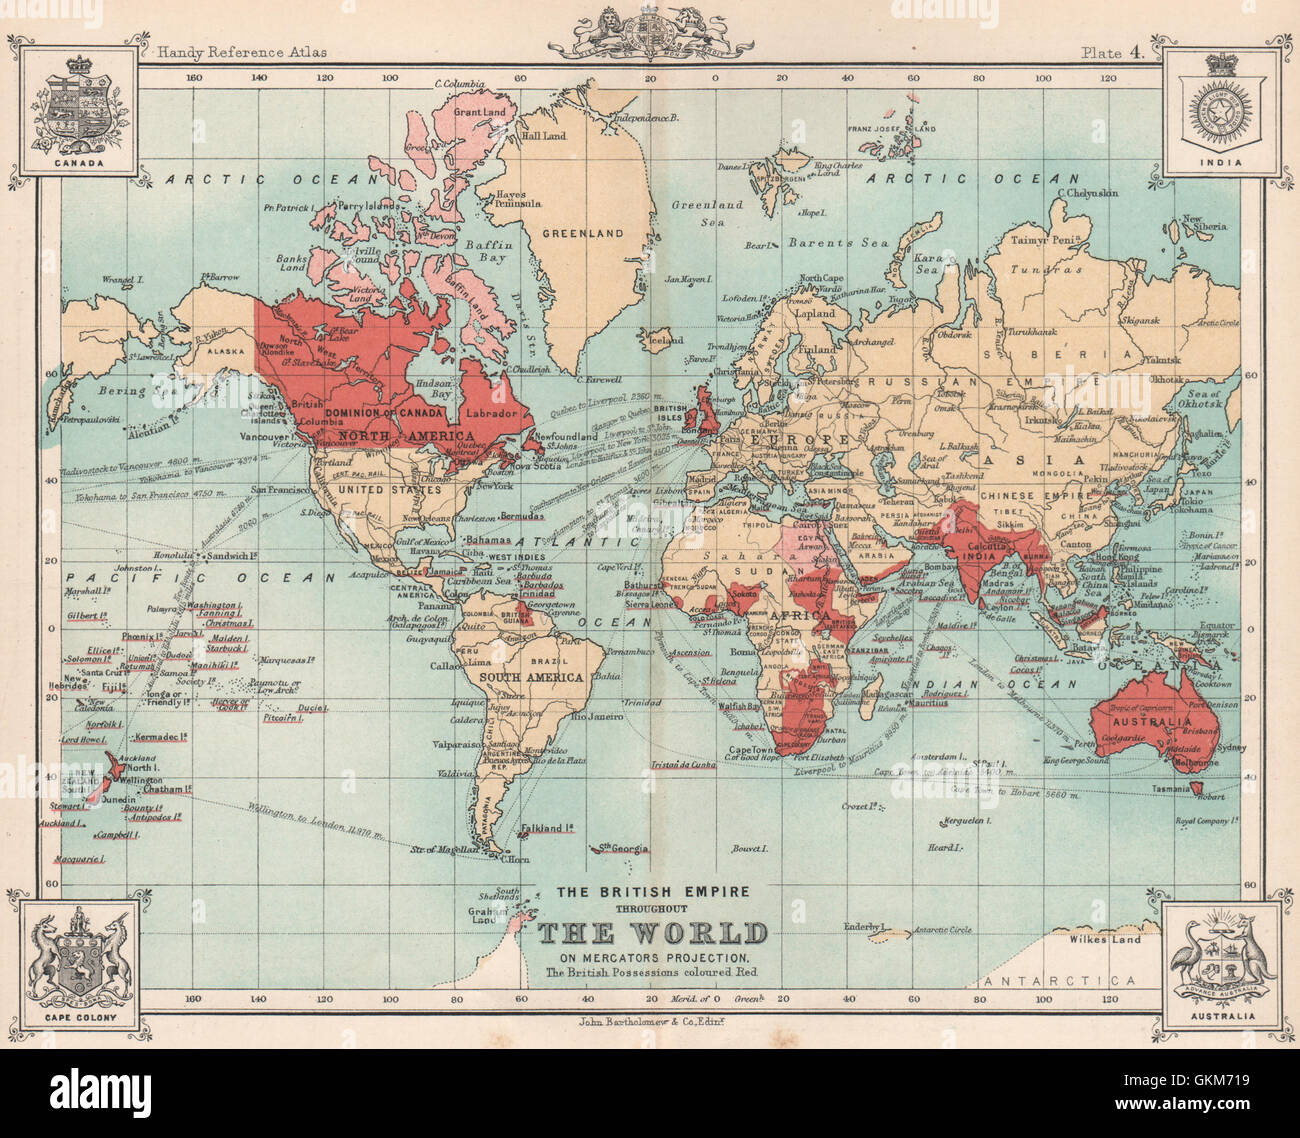 L'Empire britannique dans le monde entier. BARTHOLOMEW, 1904 carte antique Banque D'Images